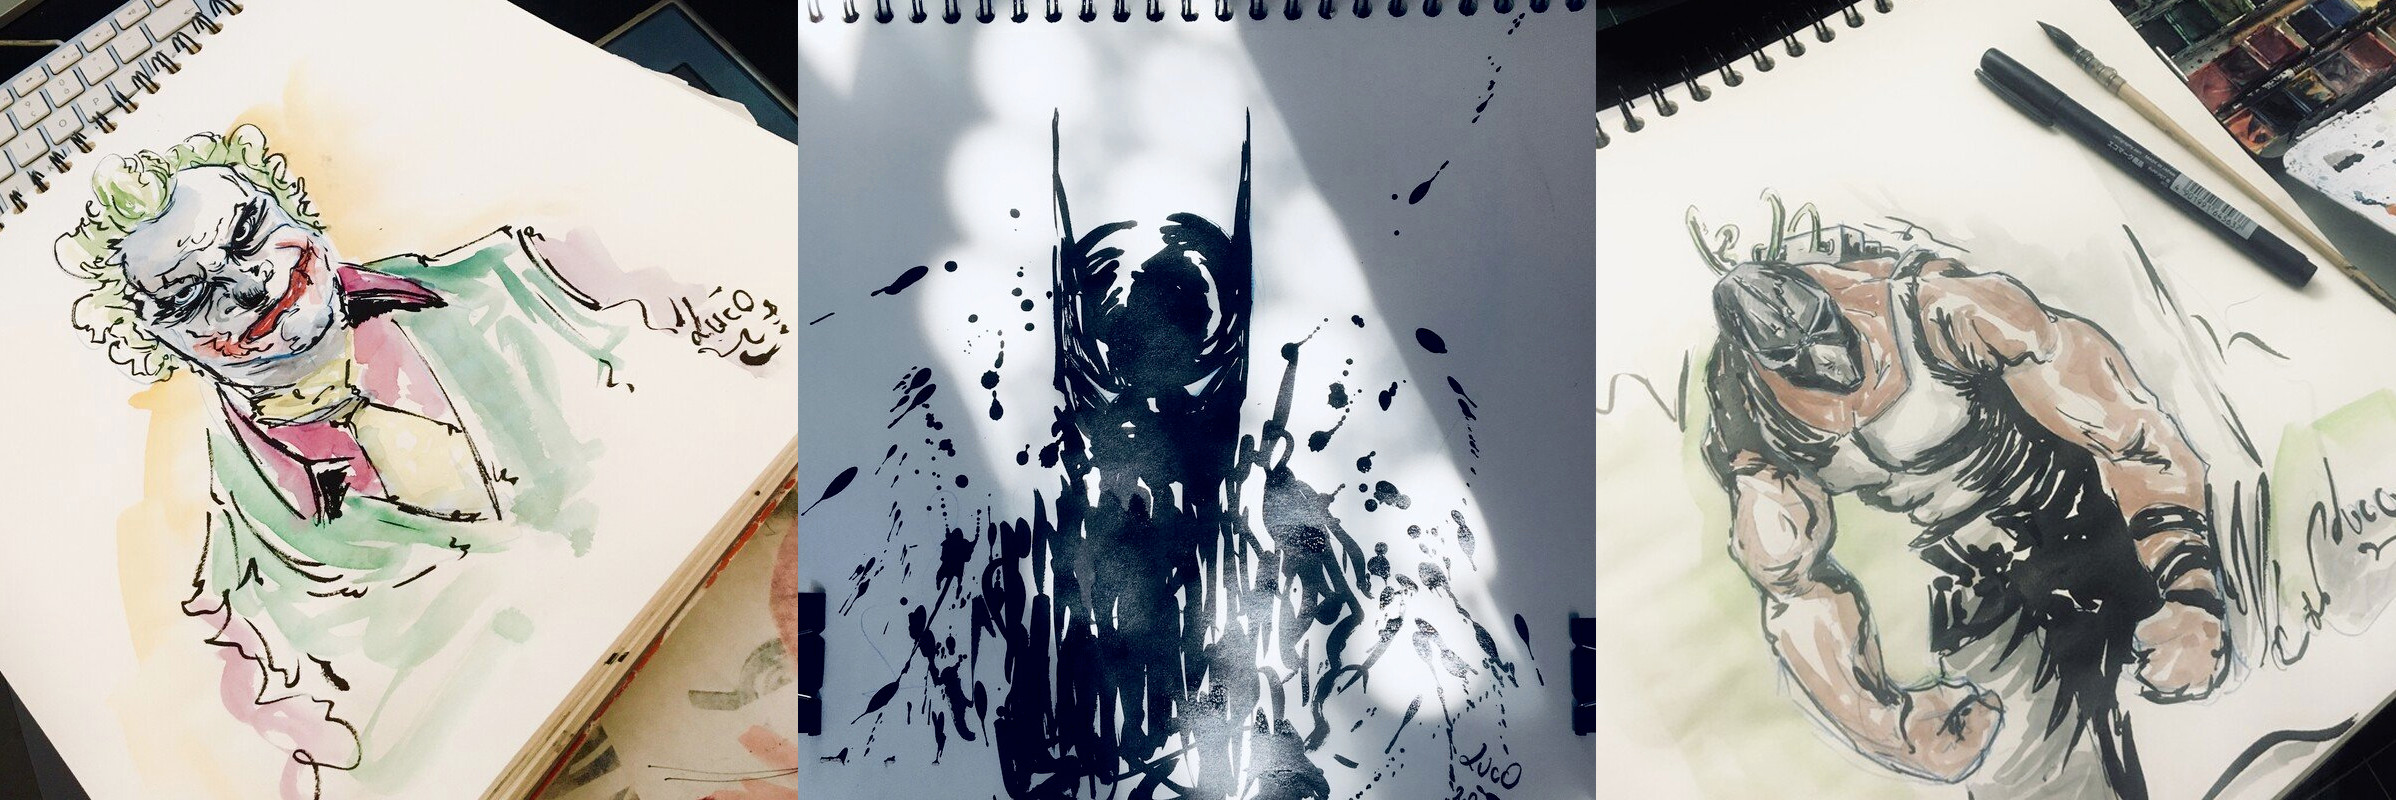 Joker / Batman / Bane MCU
Ink and watercolor